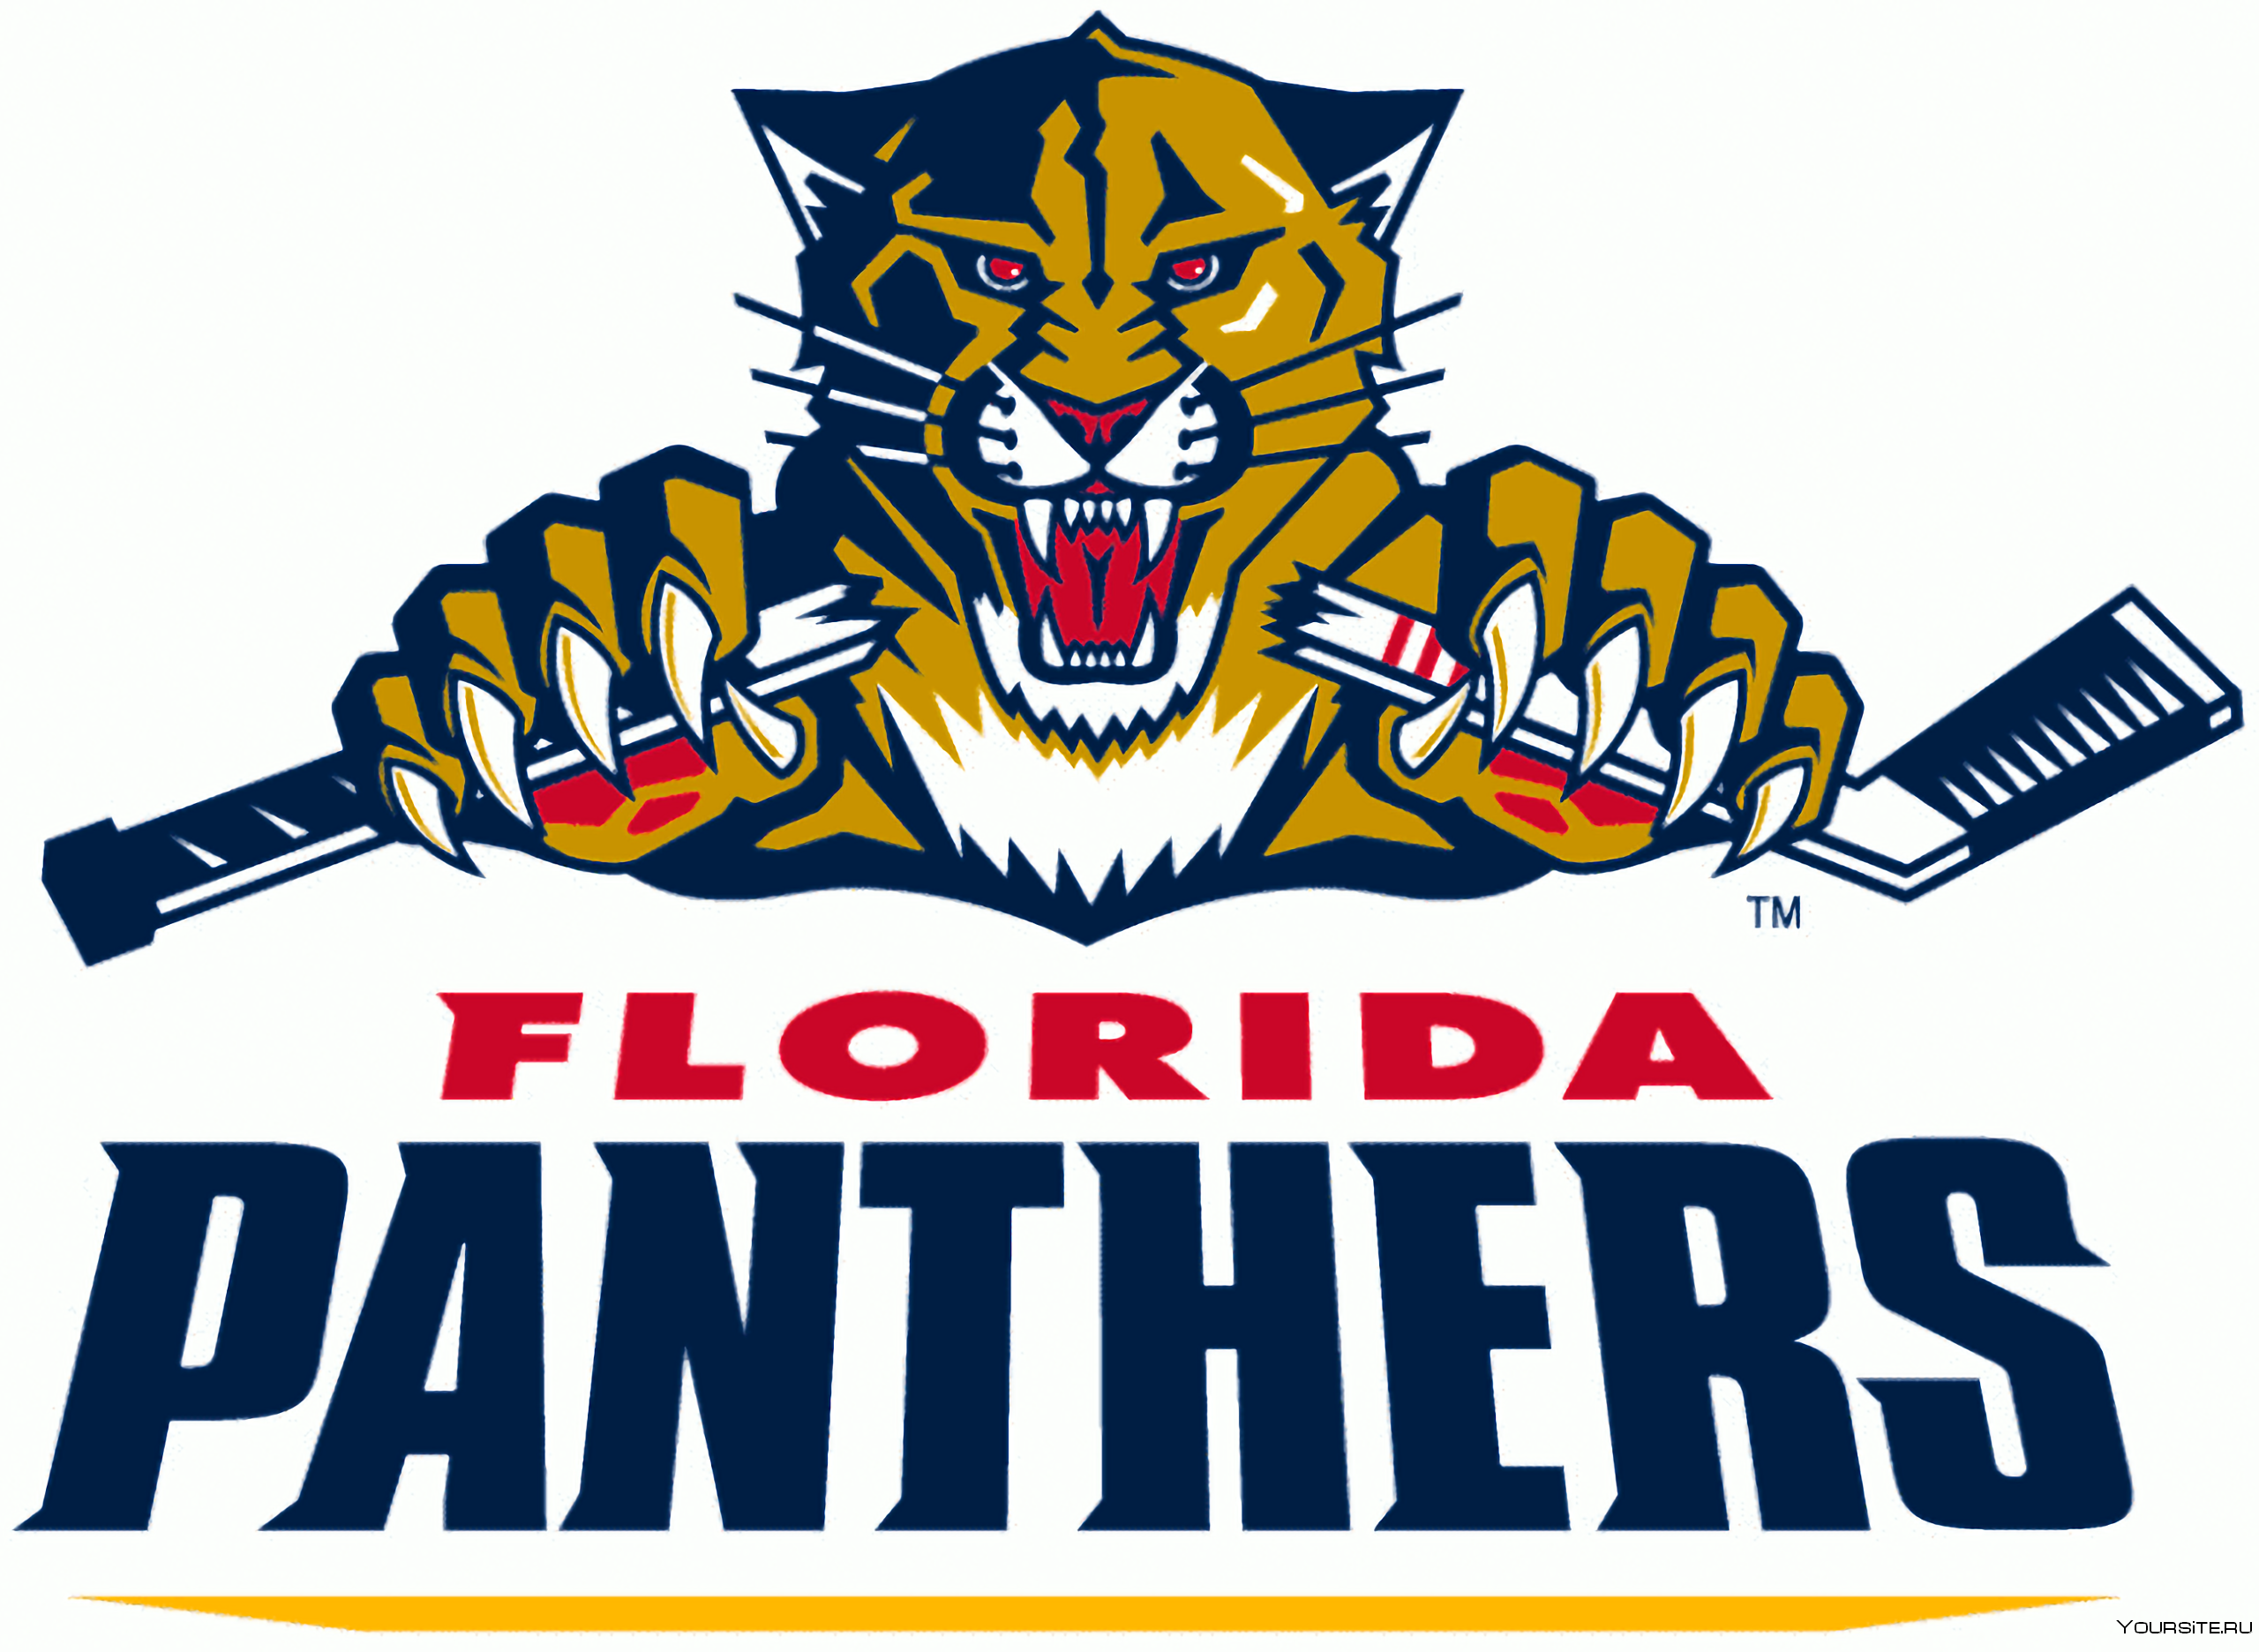 Картинки хоккейных команд. Хоккейный клуб Флорида Пантерз. Эмблема хоккейной команды Флорида Пантерс. Хк Флорида Пантерз логотип. Логотип эмблема клуба Флорида Пантерс.